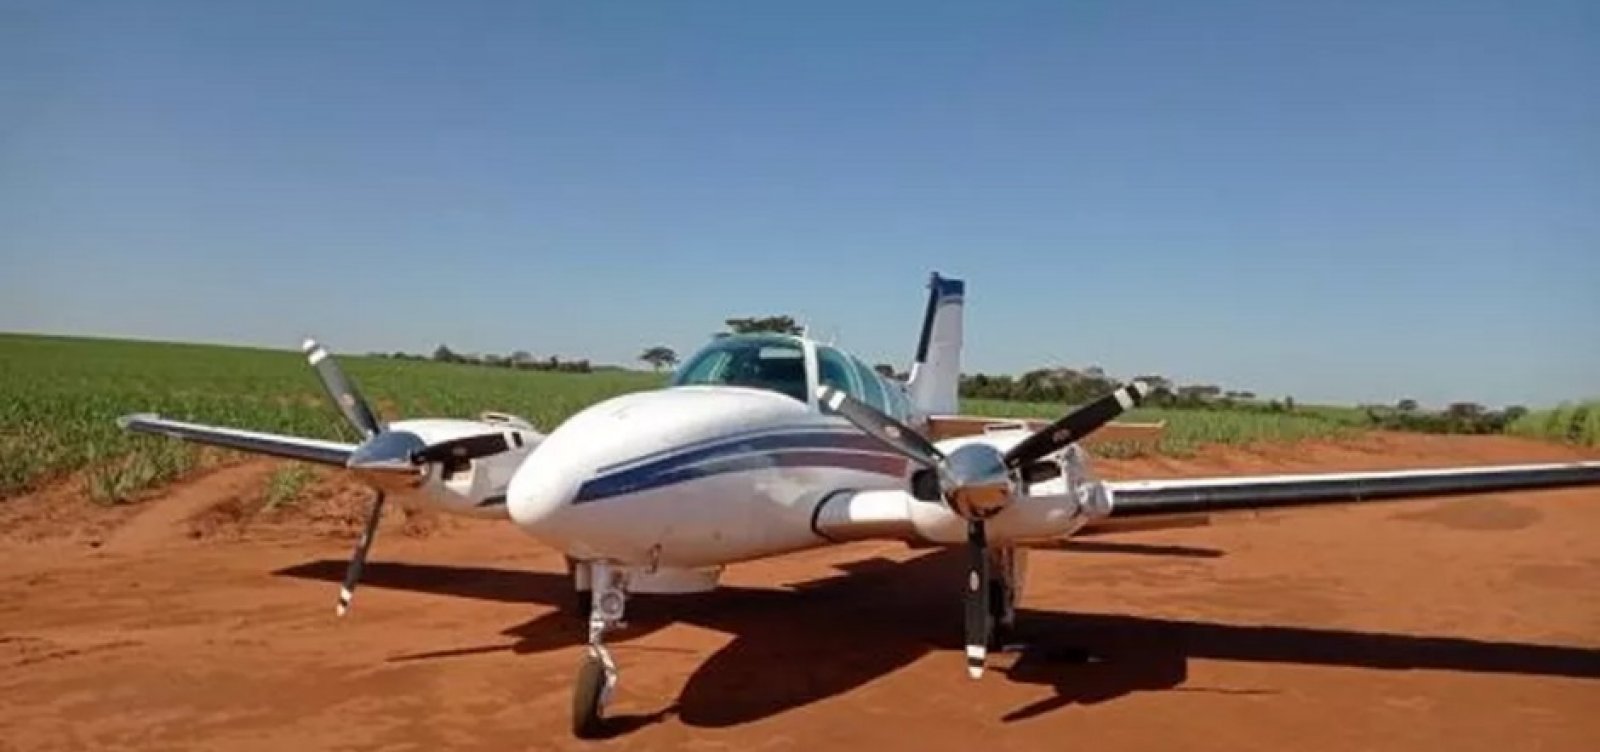 Com 500 quilos de cocaína, aeronave é interceptada pela FAB no Mato Grosso do Sul 